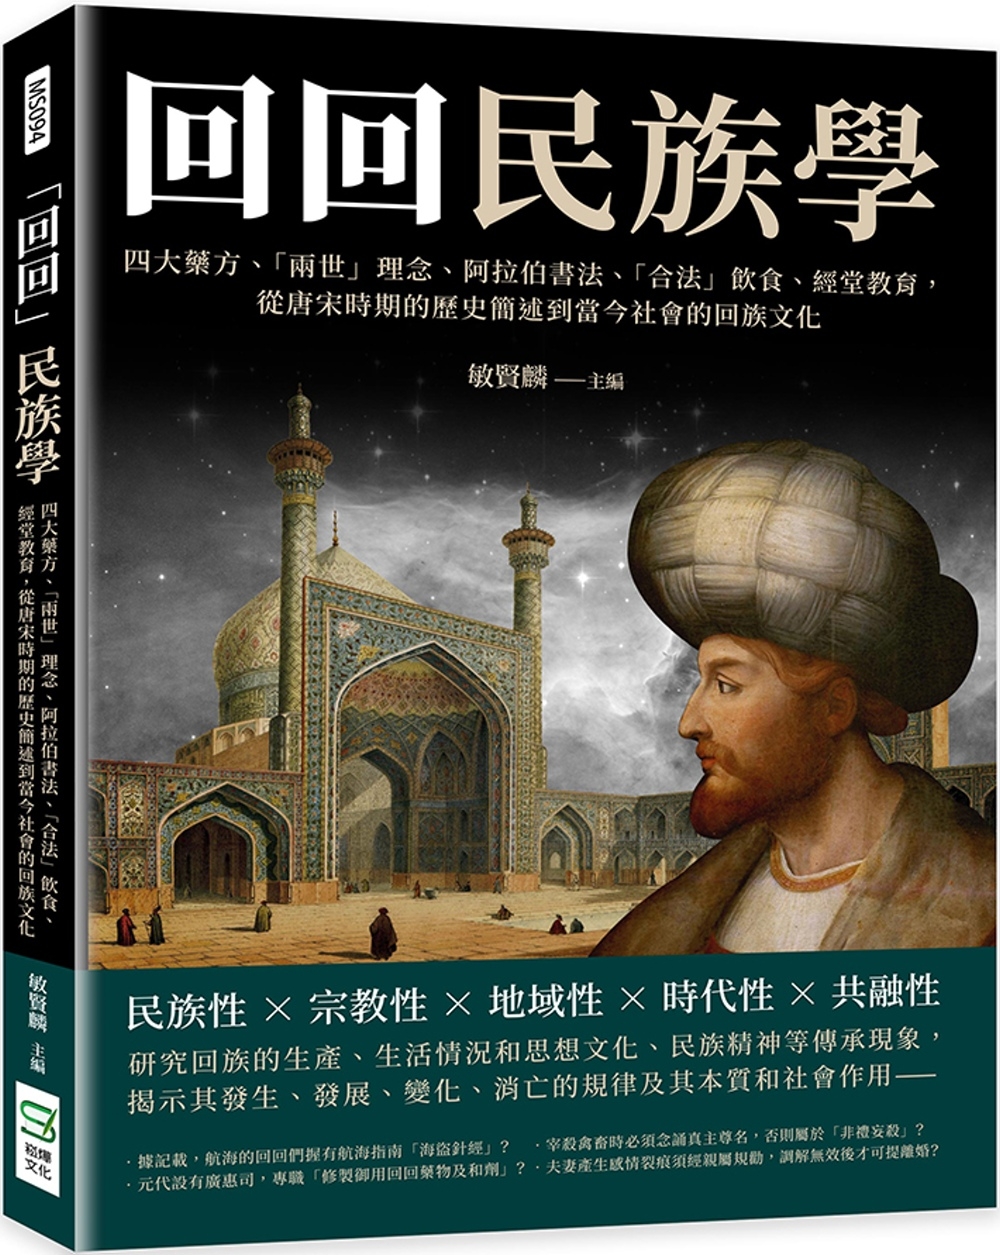 「回回」民族學：四大藥方、「兩世」理念、阿拉伯書法、「合法」飲食、經堂教育， 從唐宋時期的歷史簡述到當今社會的回族文化